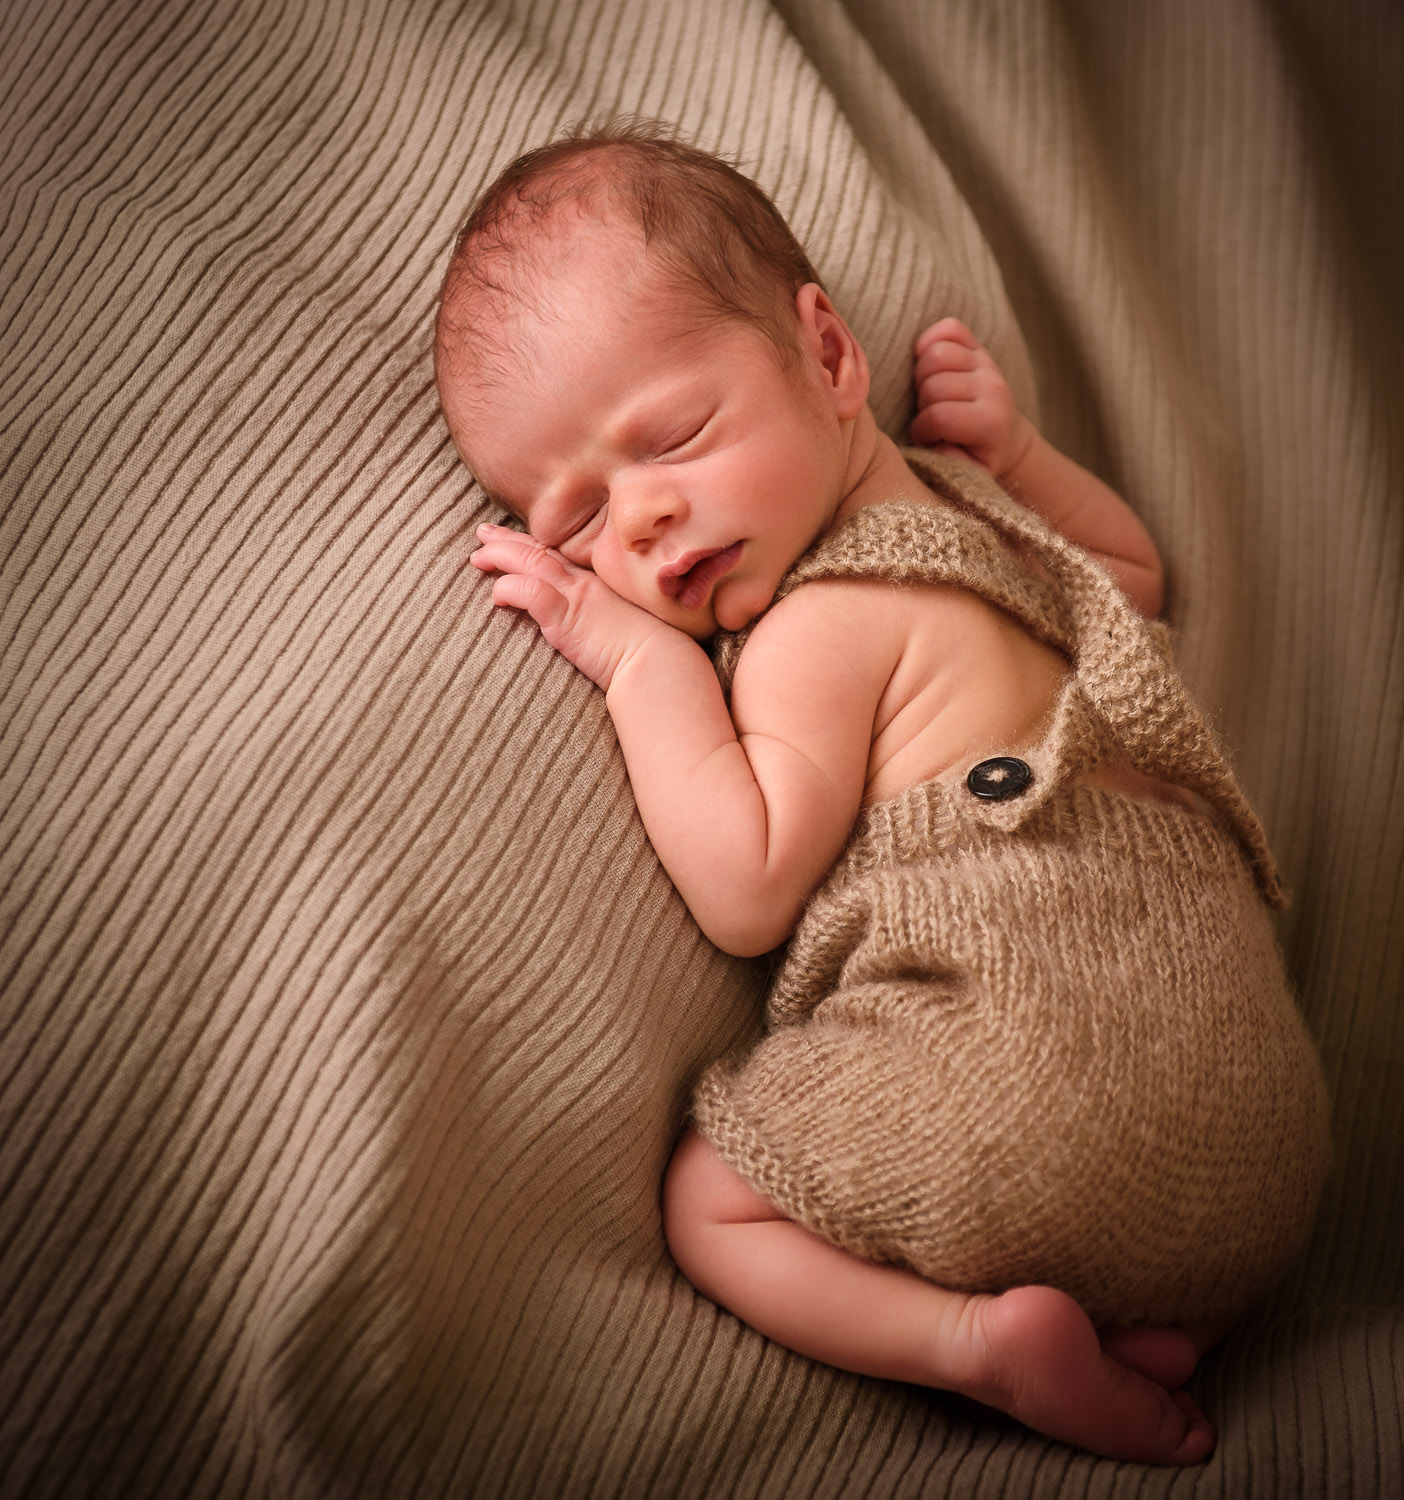 Newborn-Baby-liegt-schlafend-auf-dem-Bauch-auf-einer-Decke